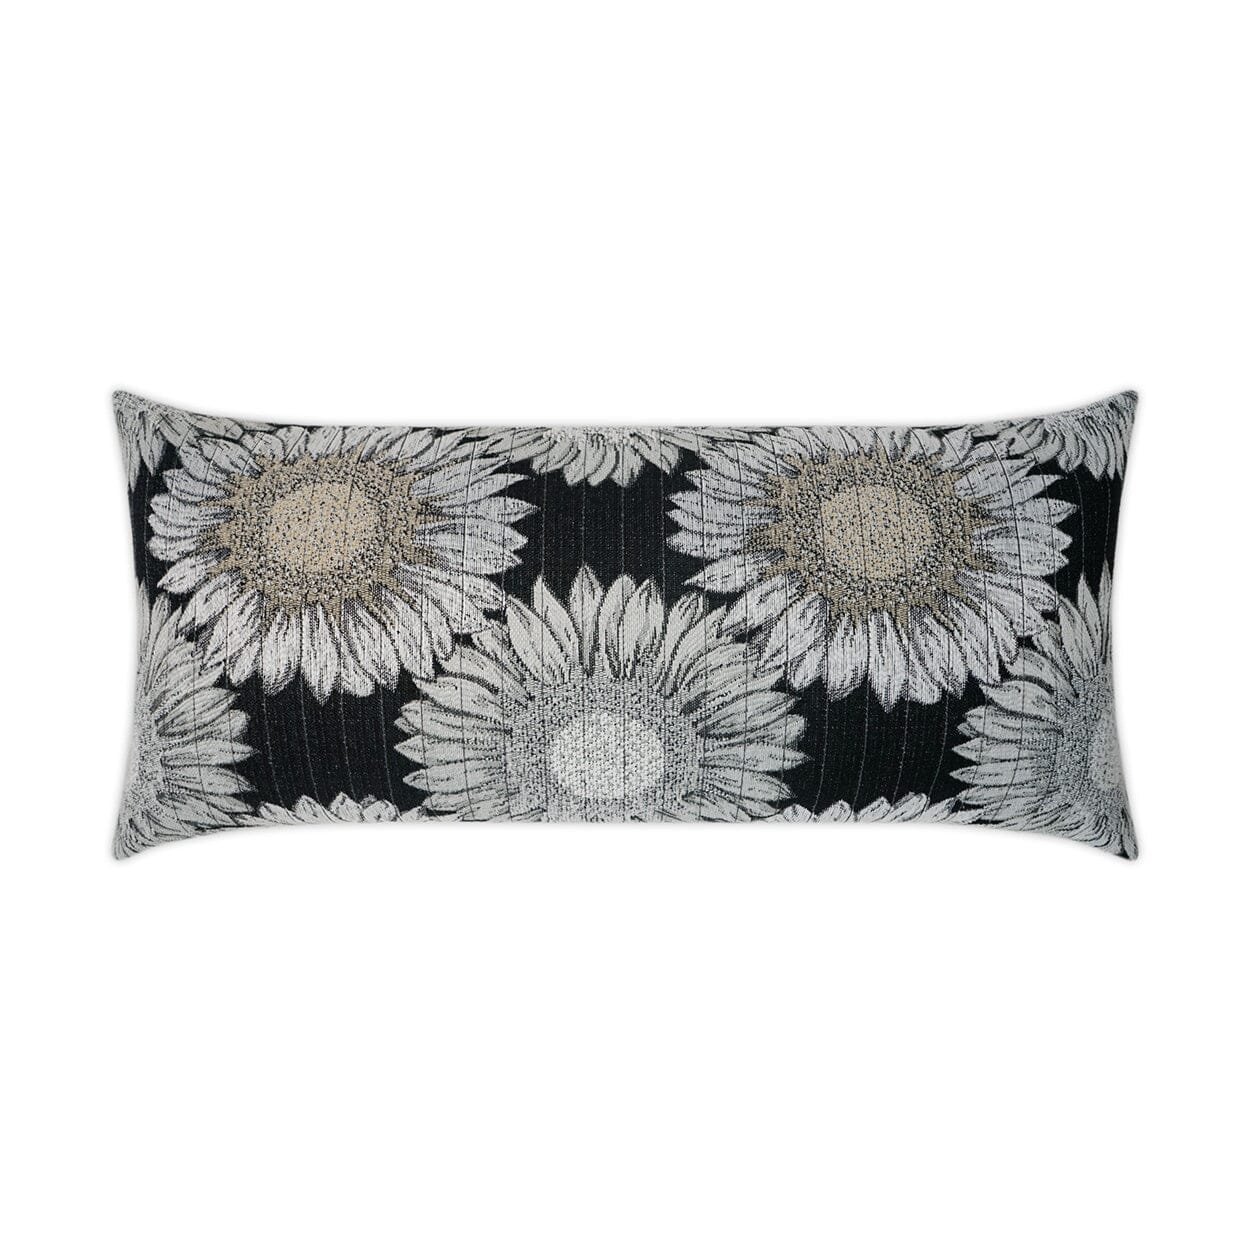 D.V. Kap 12" x 24" Outdoor Lumbar Pillow | Daisy Chain Black Pillows D.V Kap Outdoor